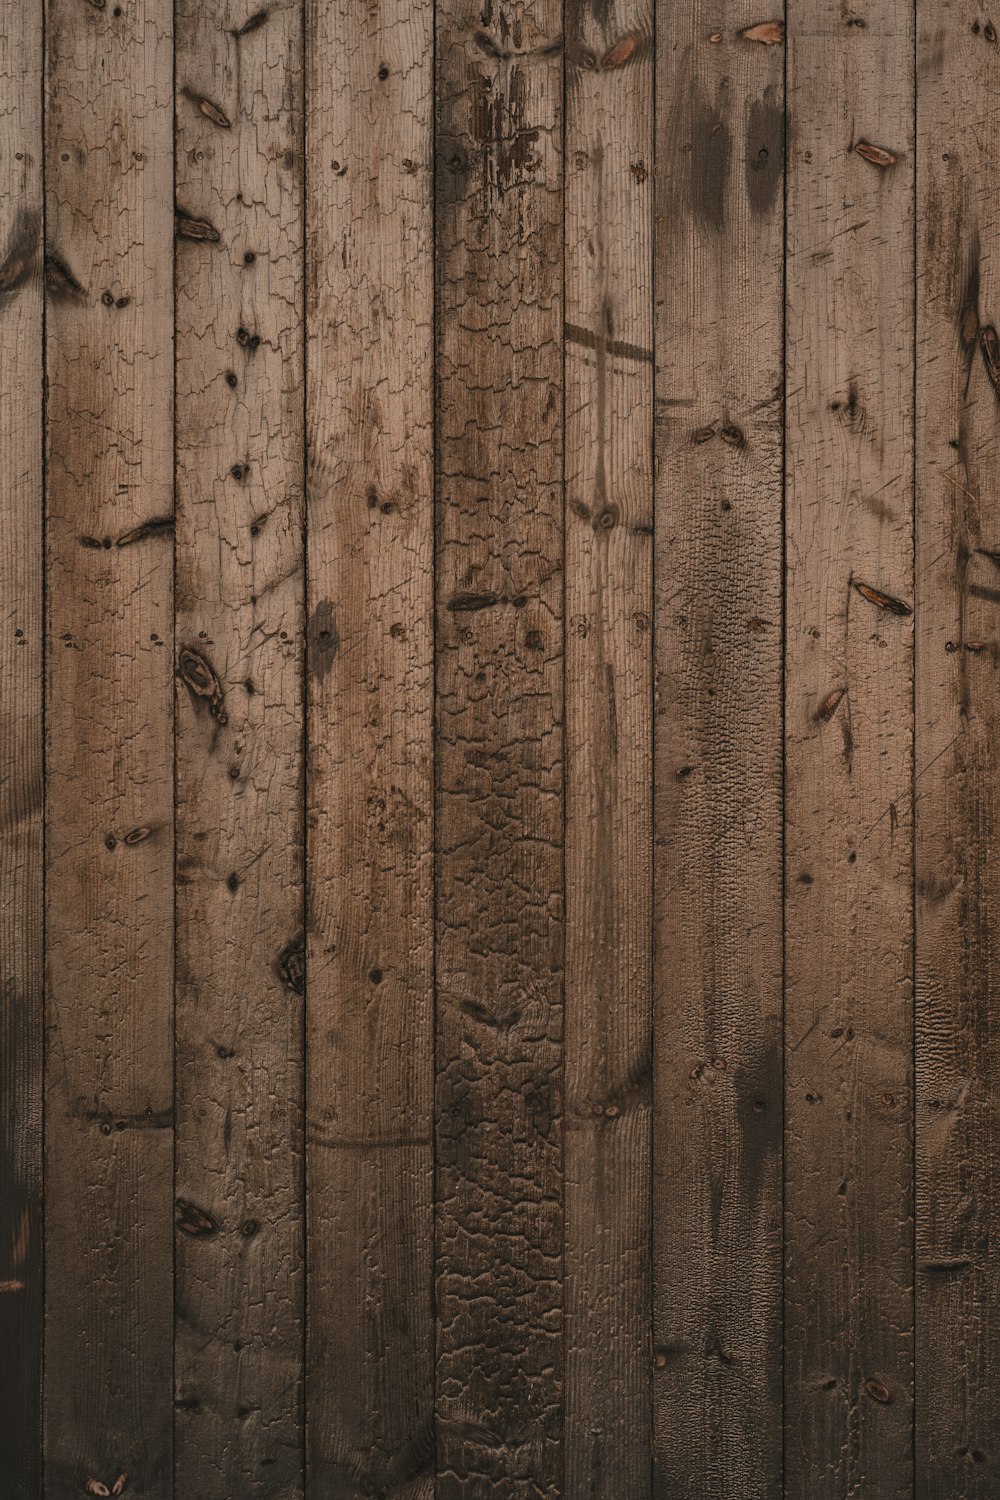 Hơn 750 hình ảnh textures gỗ miễn phí tại đây sẽ giúp cho bạn dễ dàng tìm kiếm những bức tranh vân gỗ độc đáo và phù hợp với nhu cầu của mình. Đừng bỏ lỡ cơ hội trải nghiệm những mẫu vân gỗ đẹp mắt tại đây!